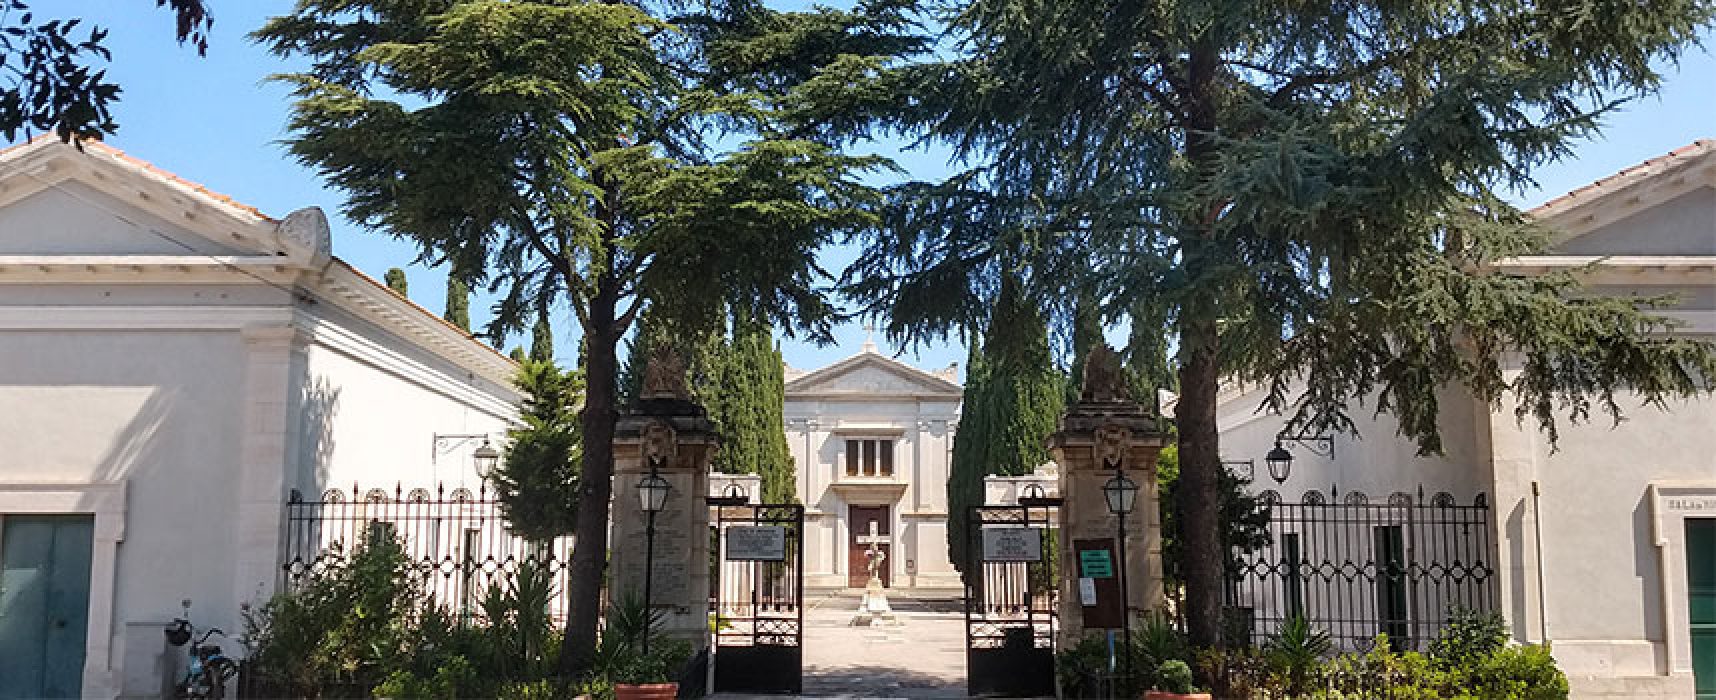 Tar Puglia conferma correttezza concessione lavori a cimitero comunale